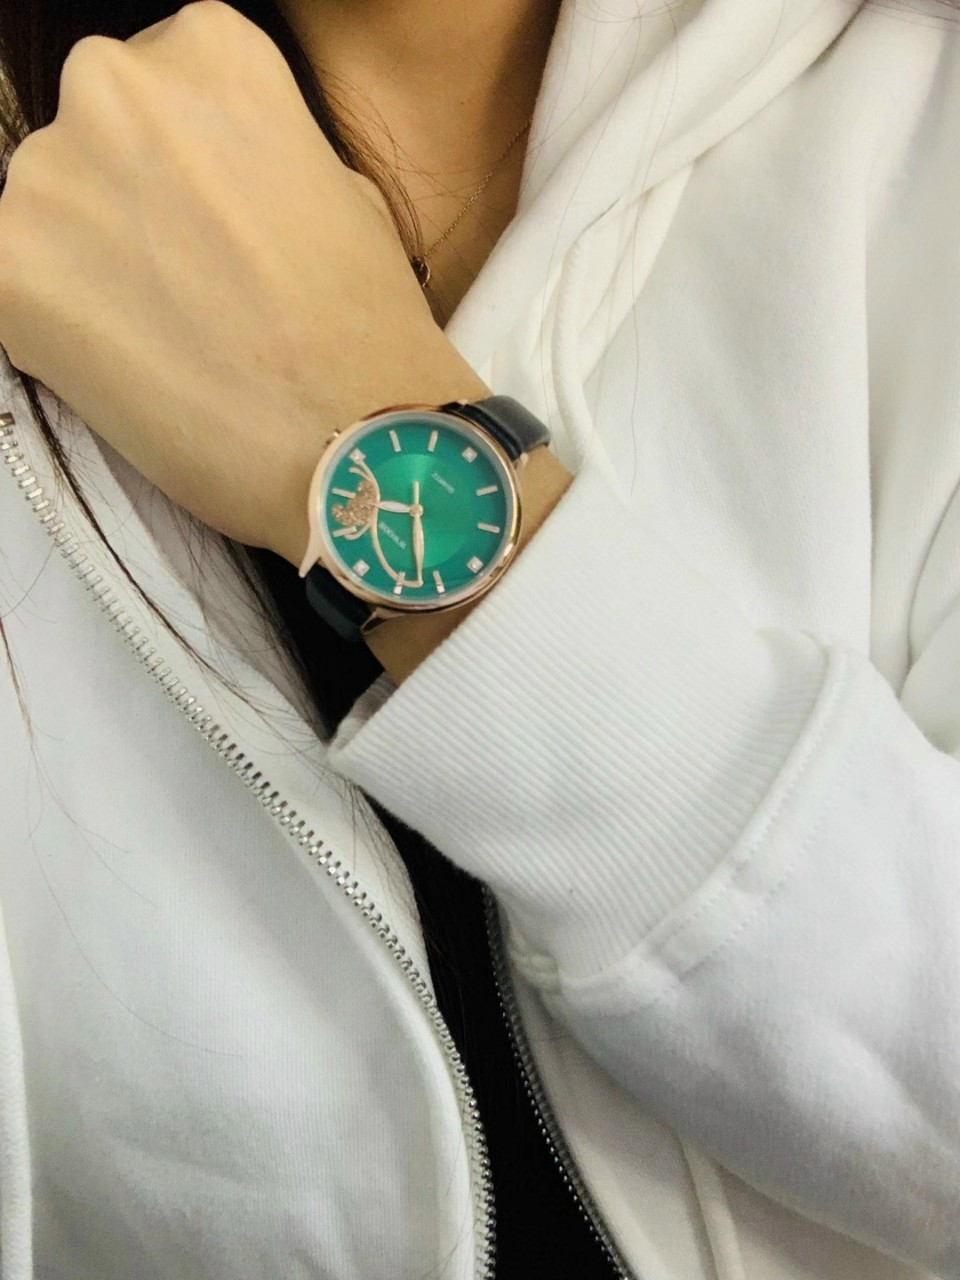 Kim Huyền Shop cung cấp đồng hồ thời trang đẹp và độc đáo - Ảnh 1